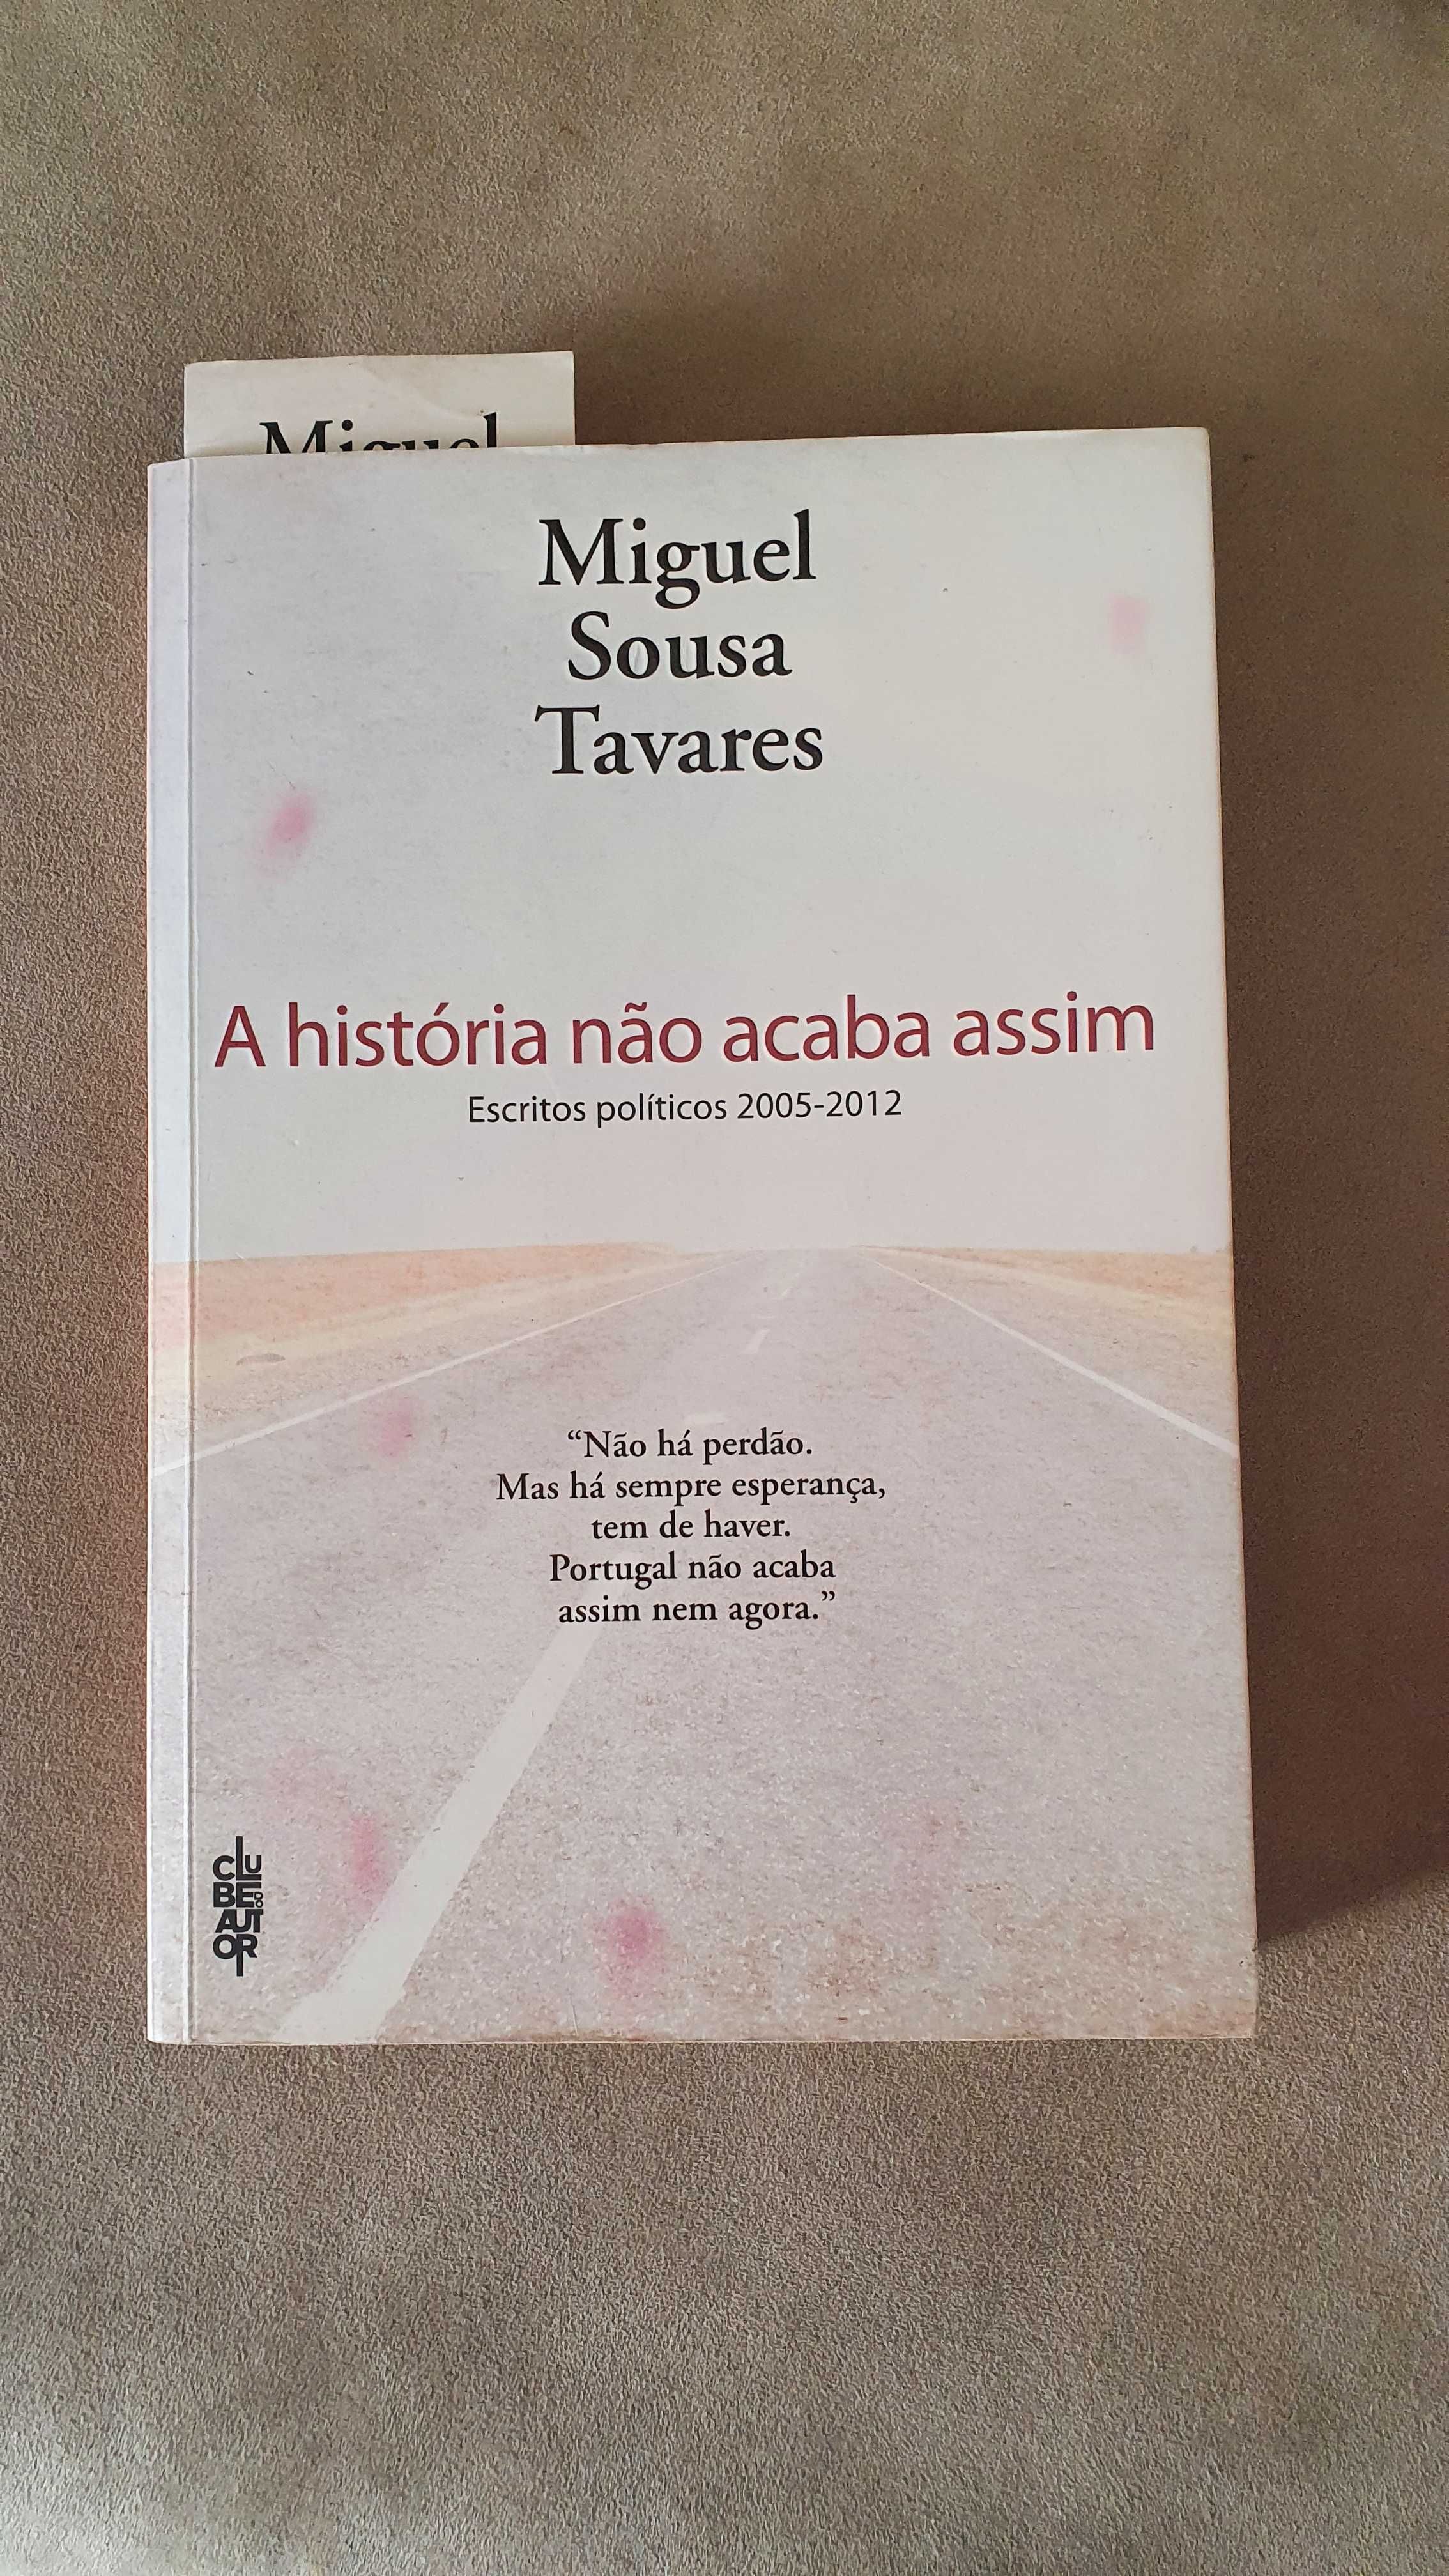 Livro "A história nao acaba assim" de Miguel Sousa Tavares